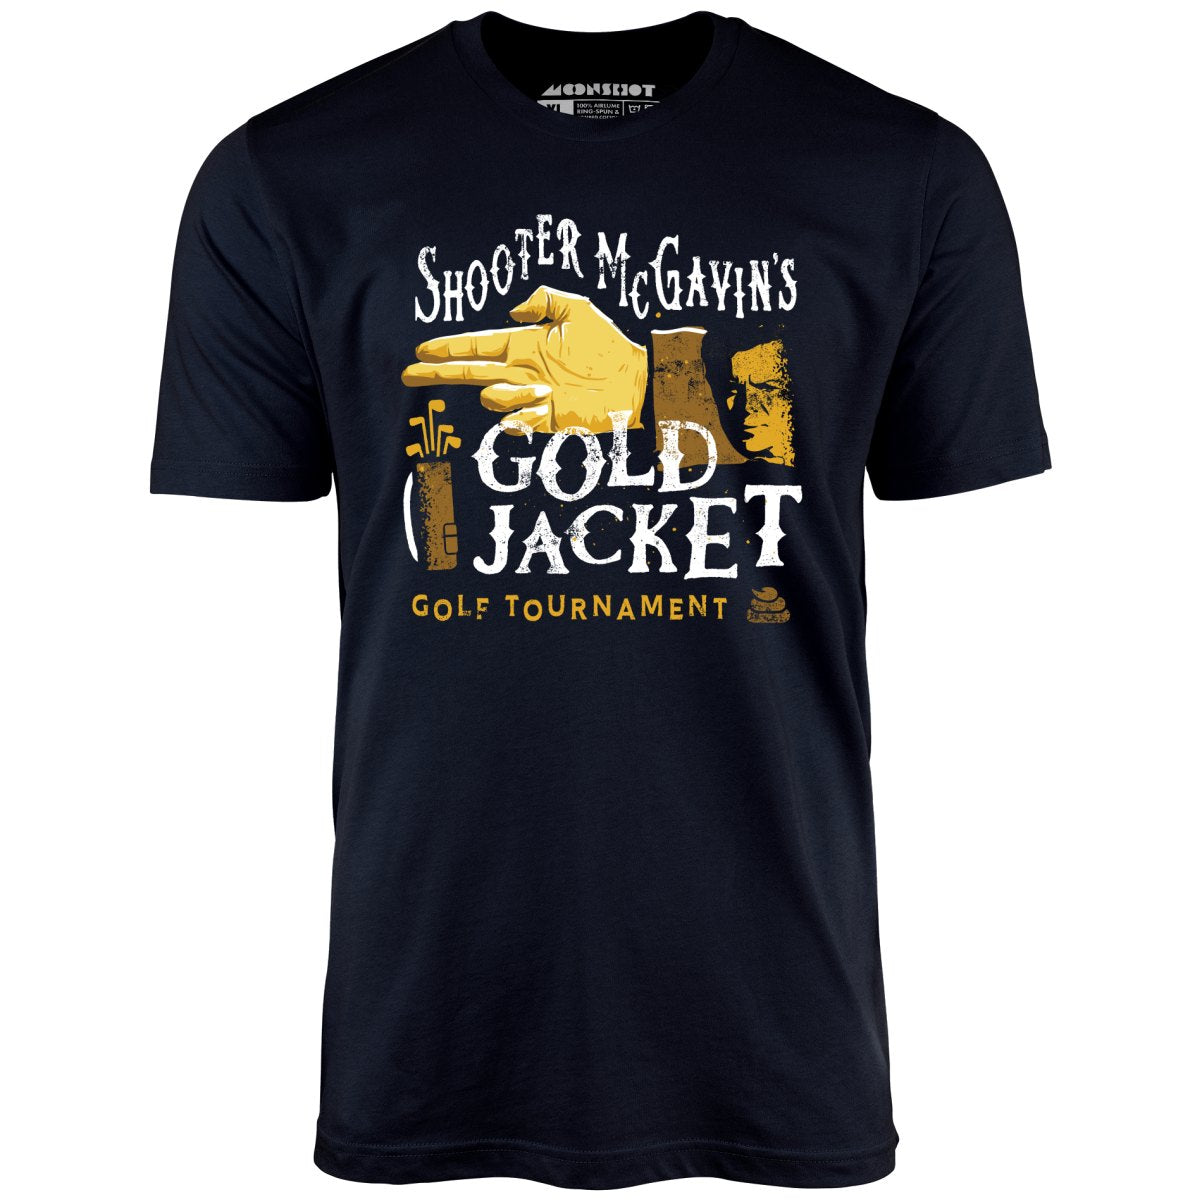 Shooter McGavin's Gold Jacket Golf Tournament - Unisex T-Shirt